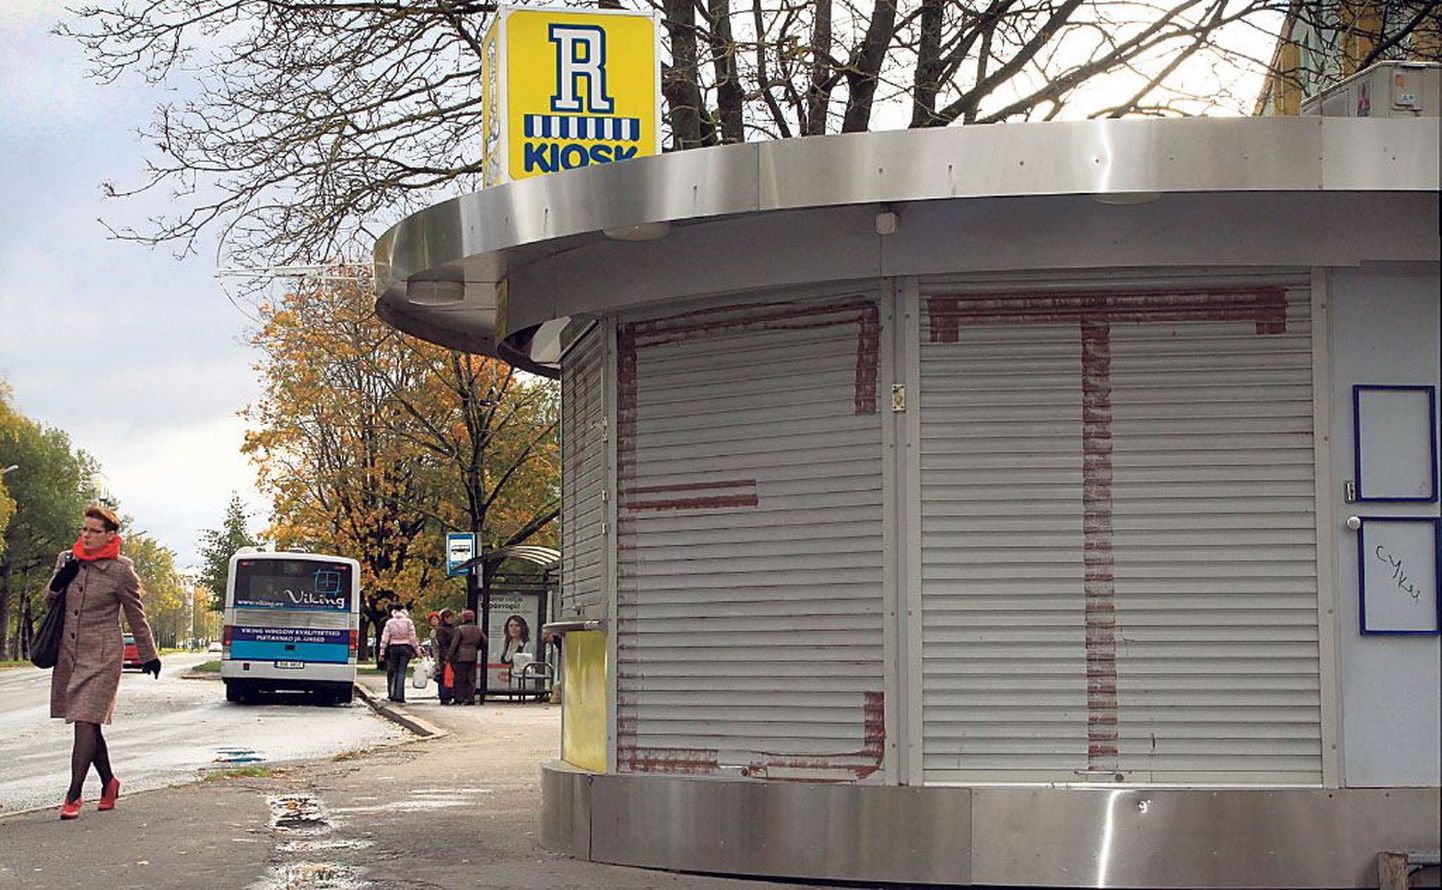 Mai tänaval Ühisgümnaasiumi peatuses asunud R-kioskist ei saa enam linnabussipiletit, värsket lehte ega nätsugi.